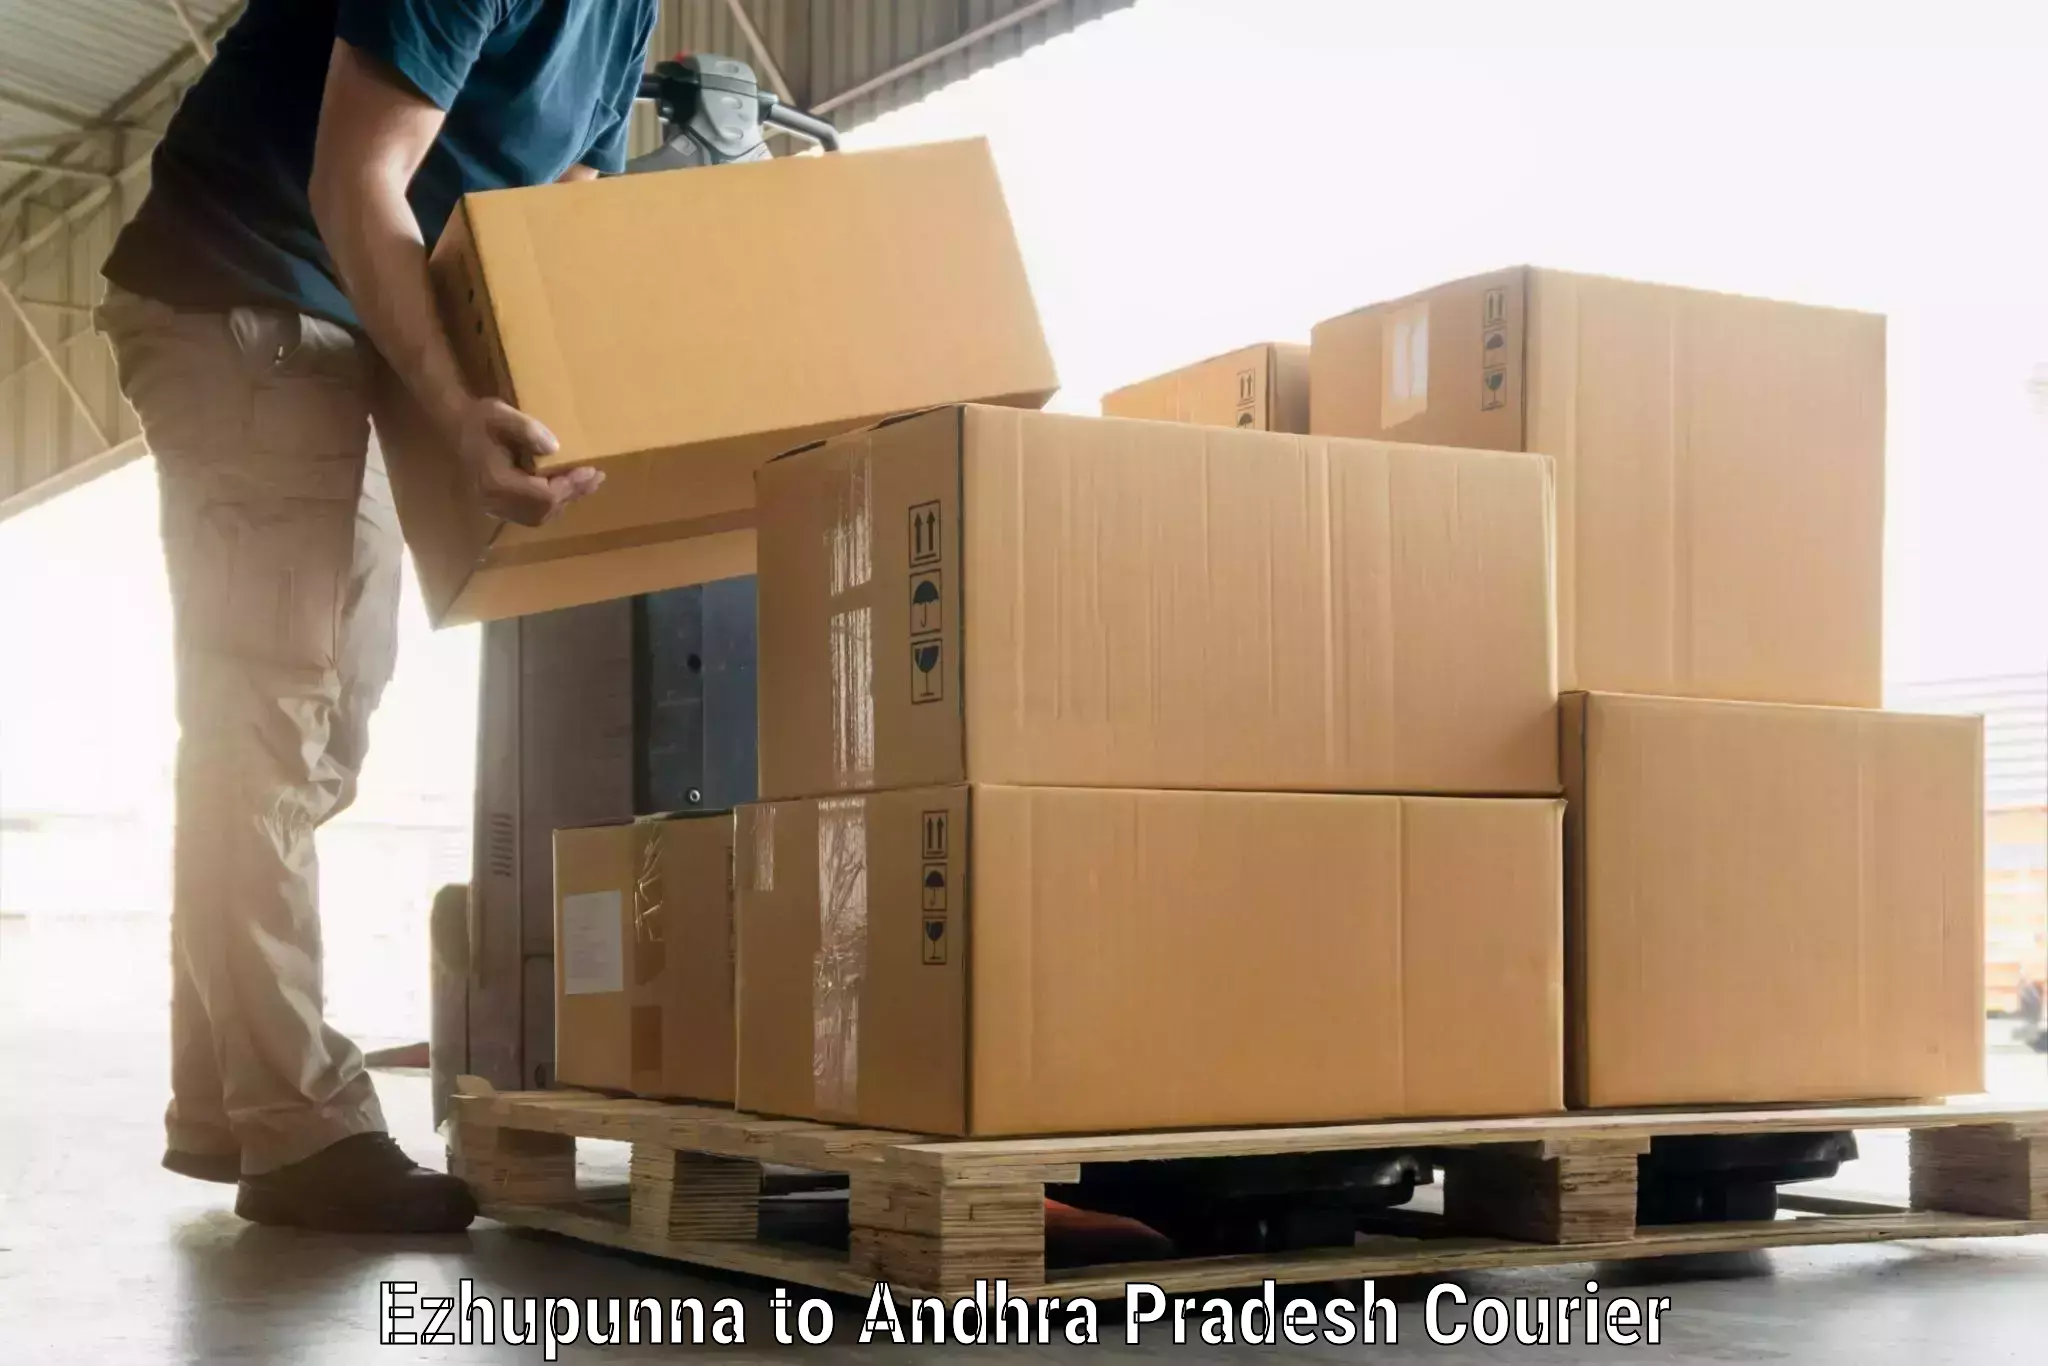 Baggage shipping experts in Ezhupunna to Ramachandrapuram